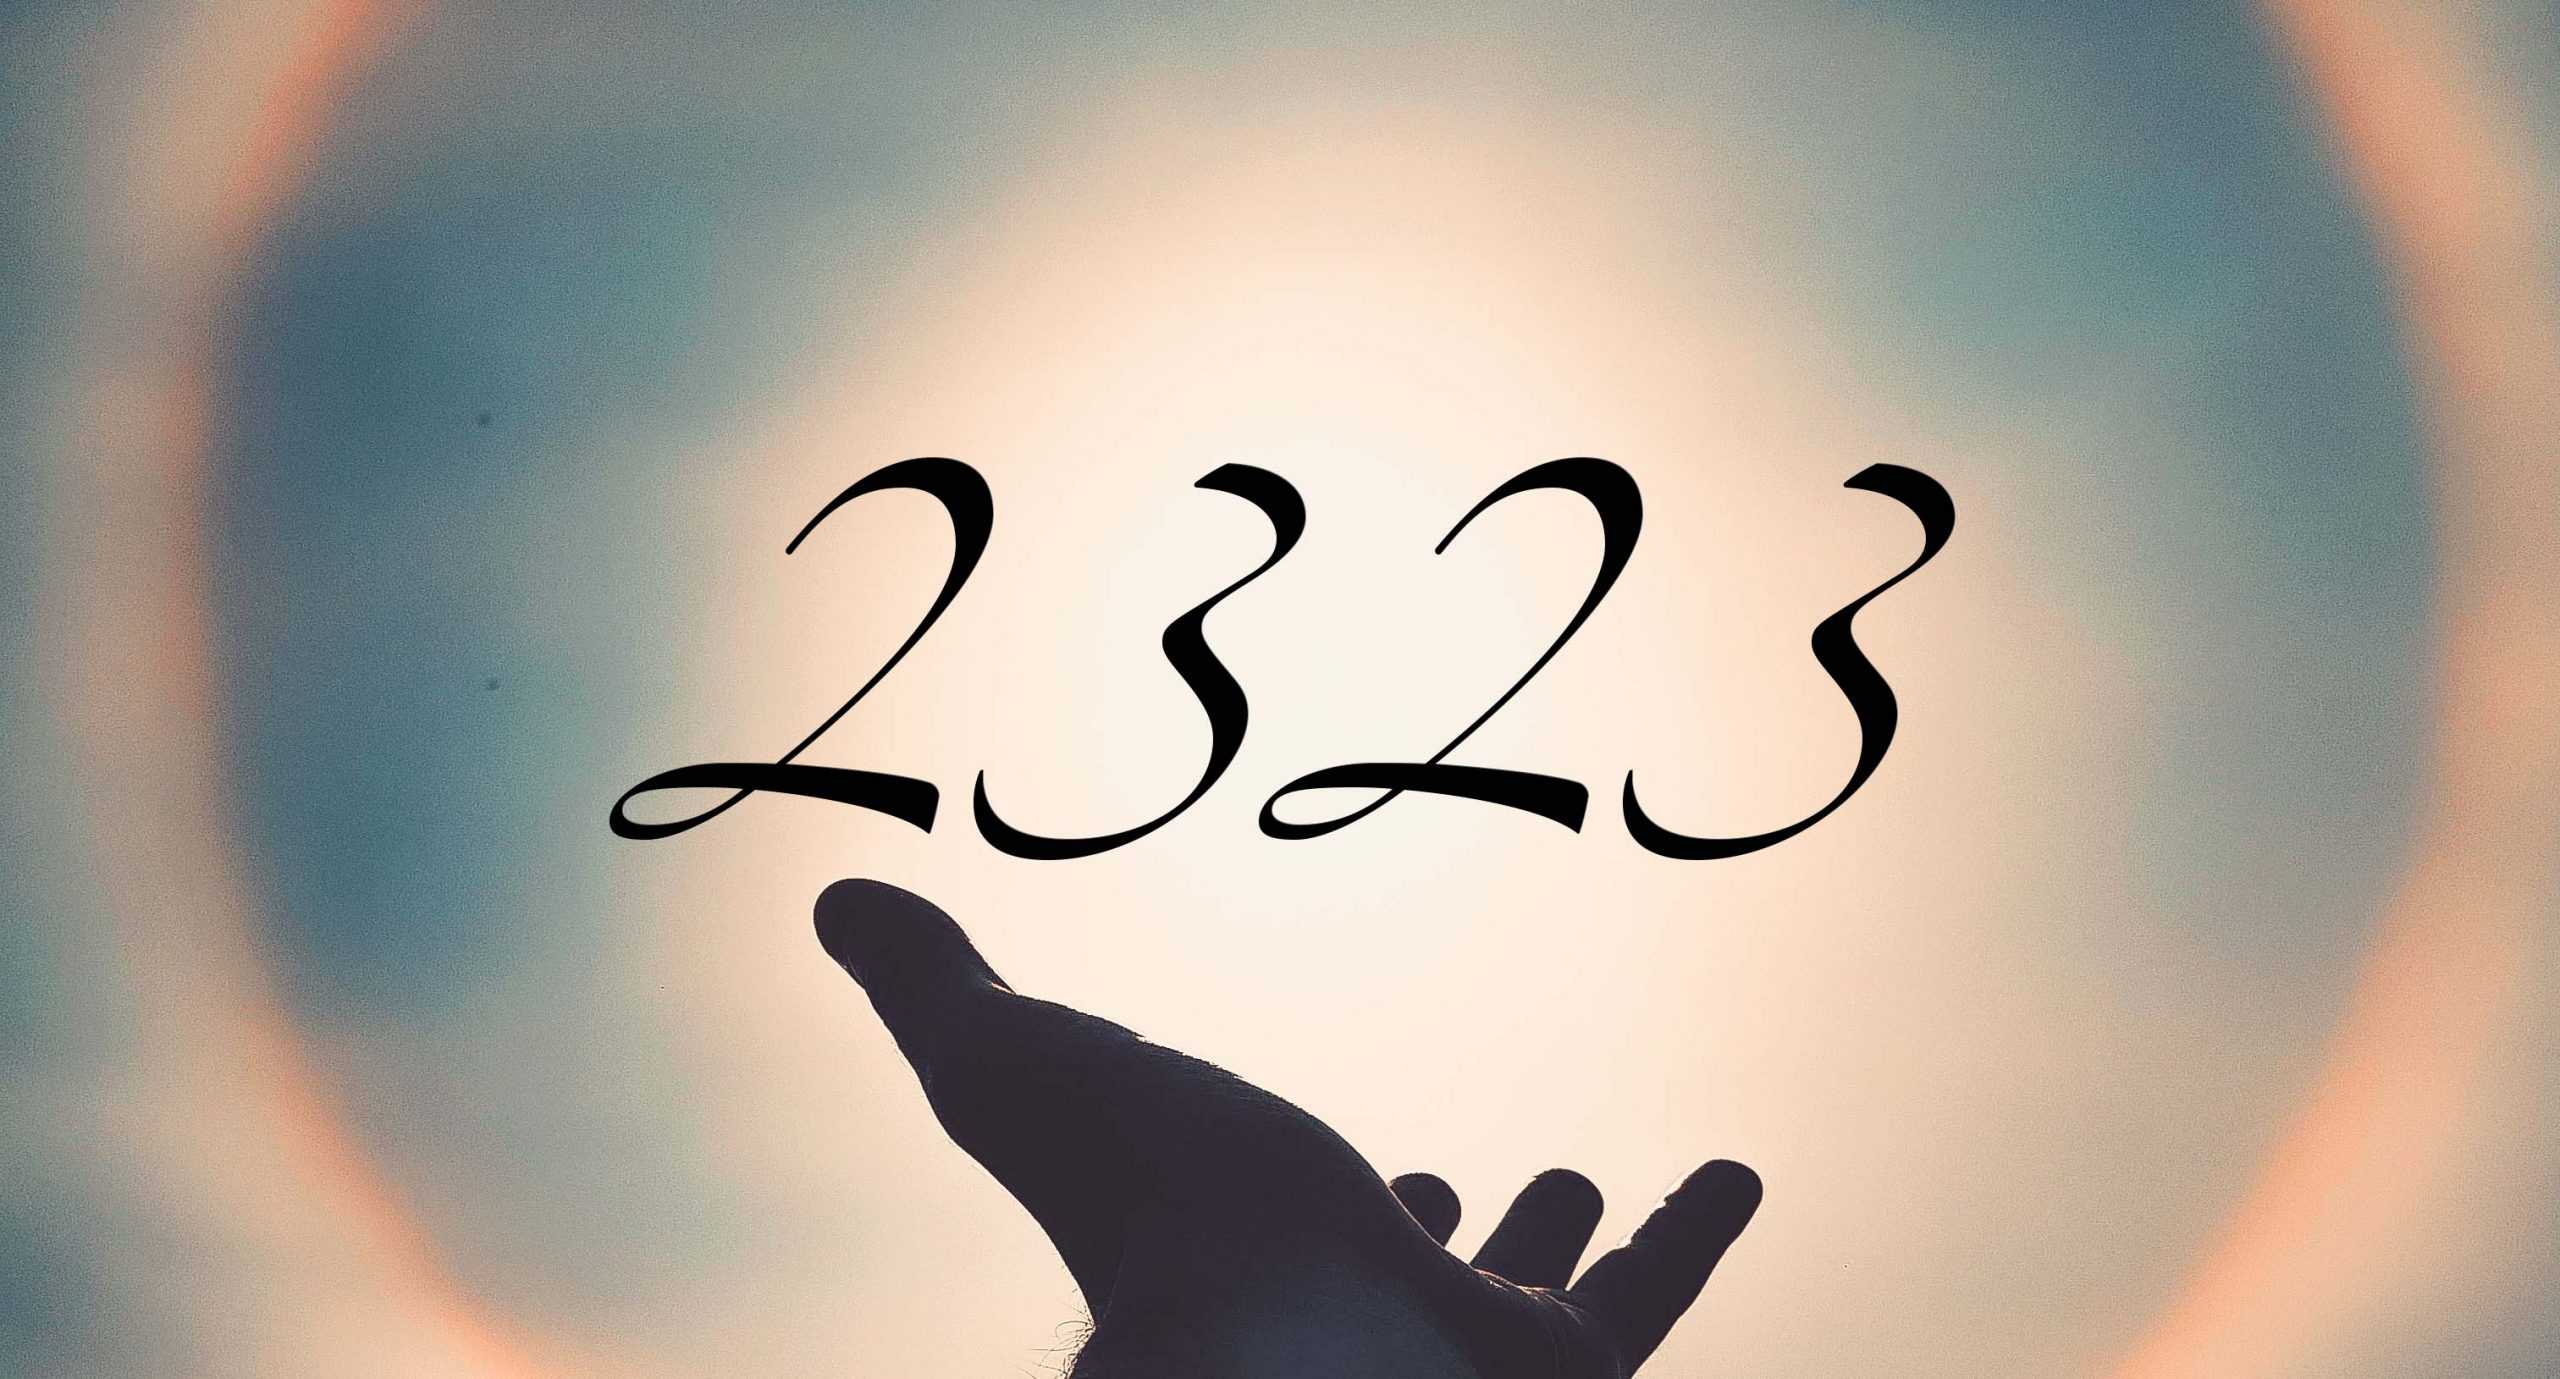 Signification du nombre 2323